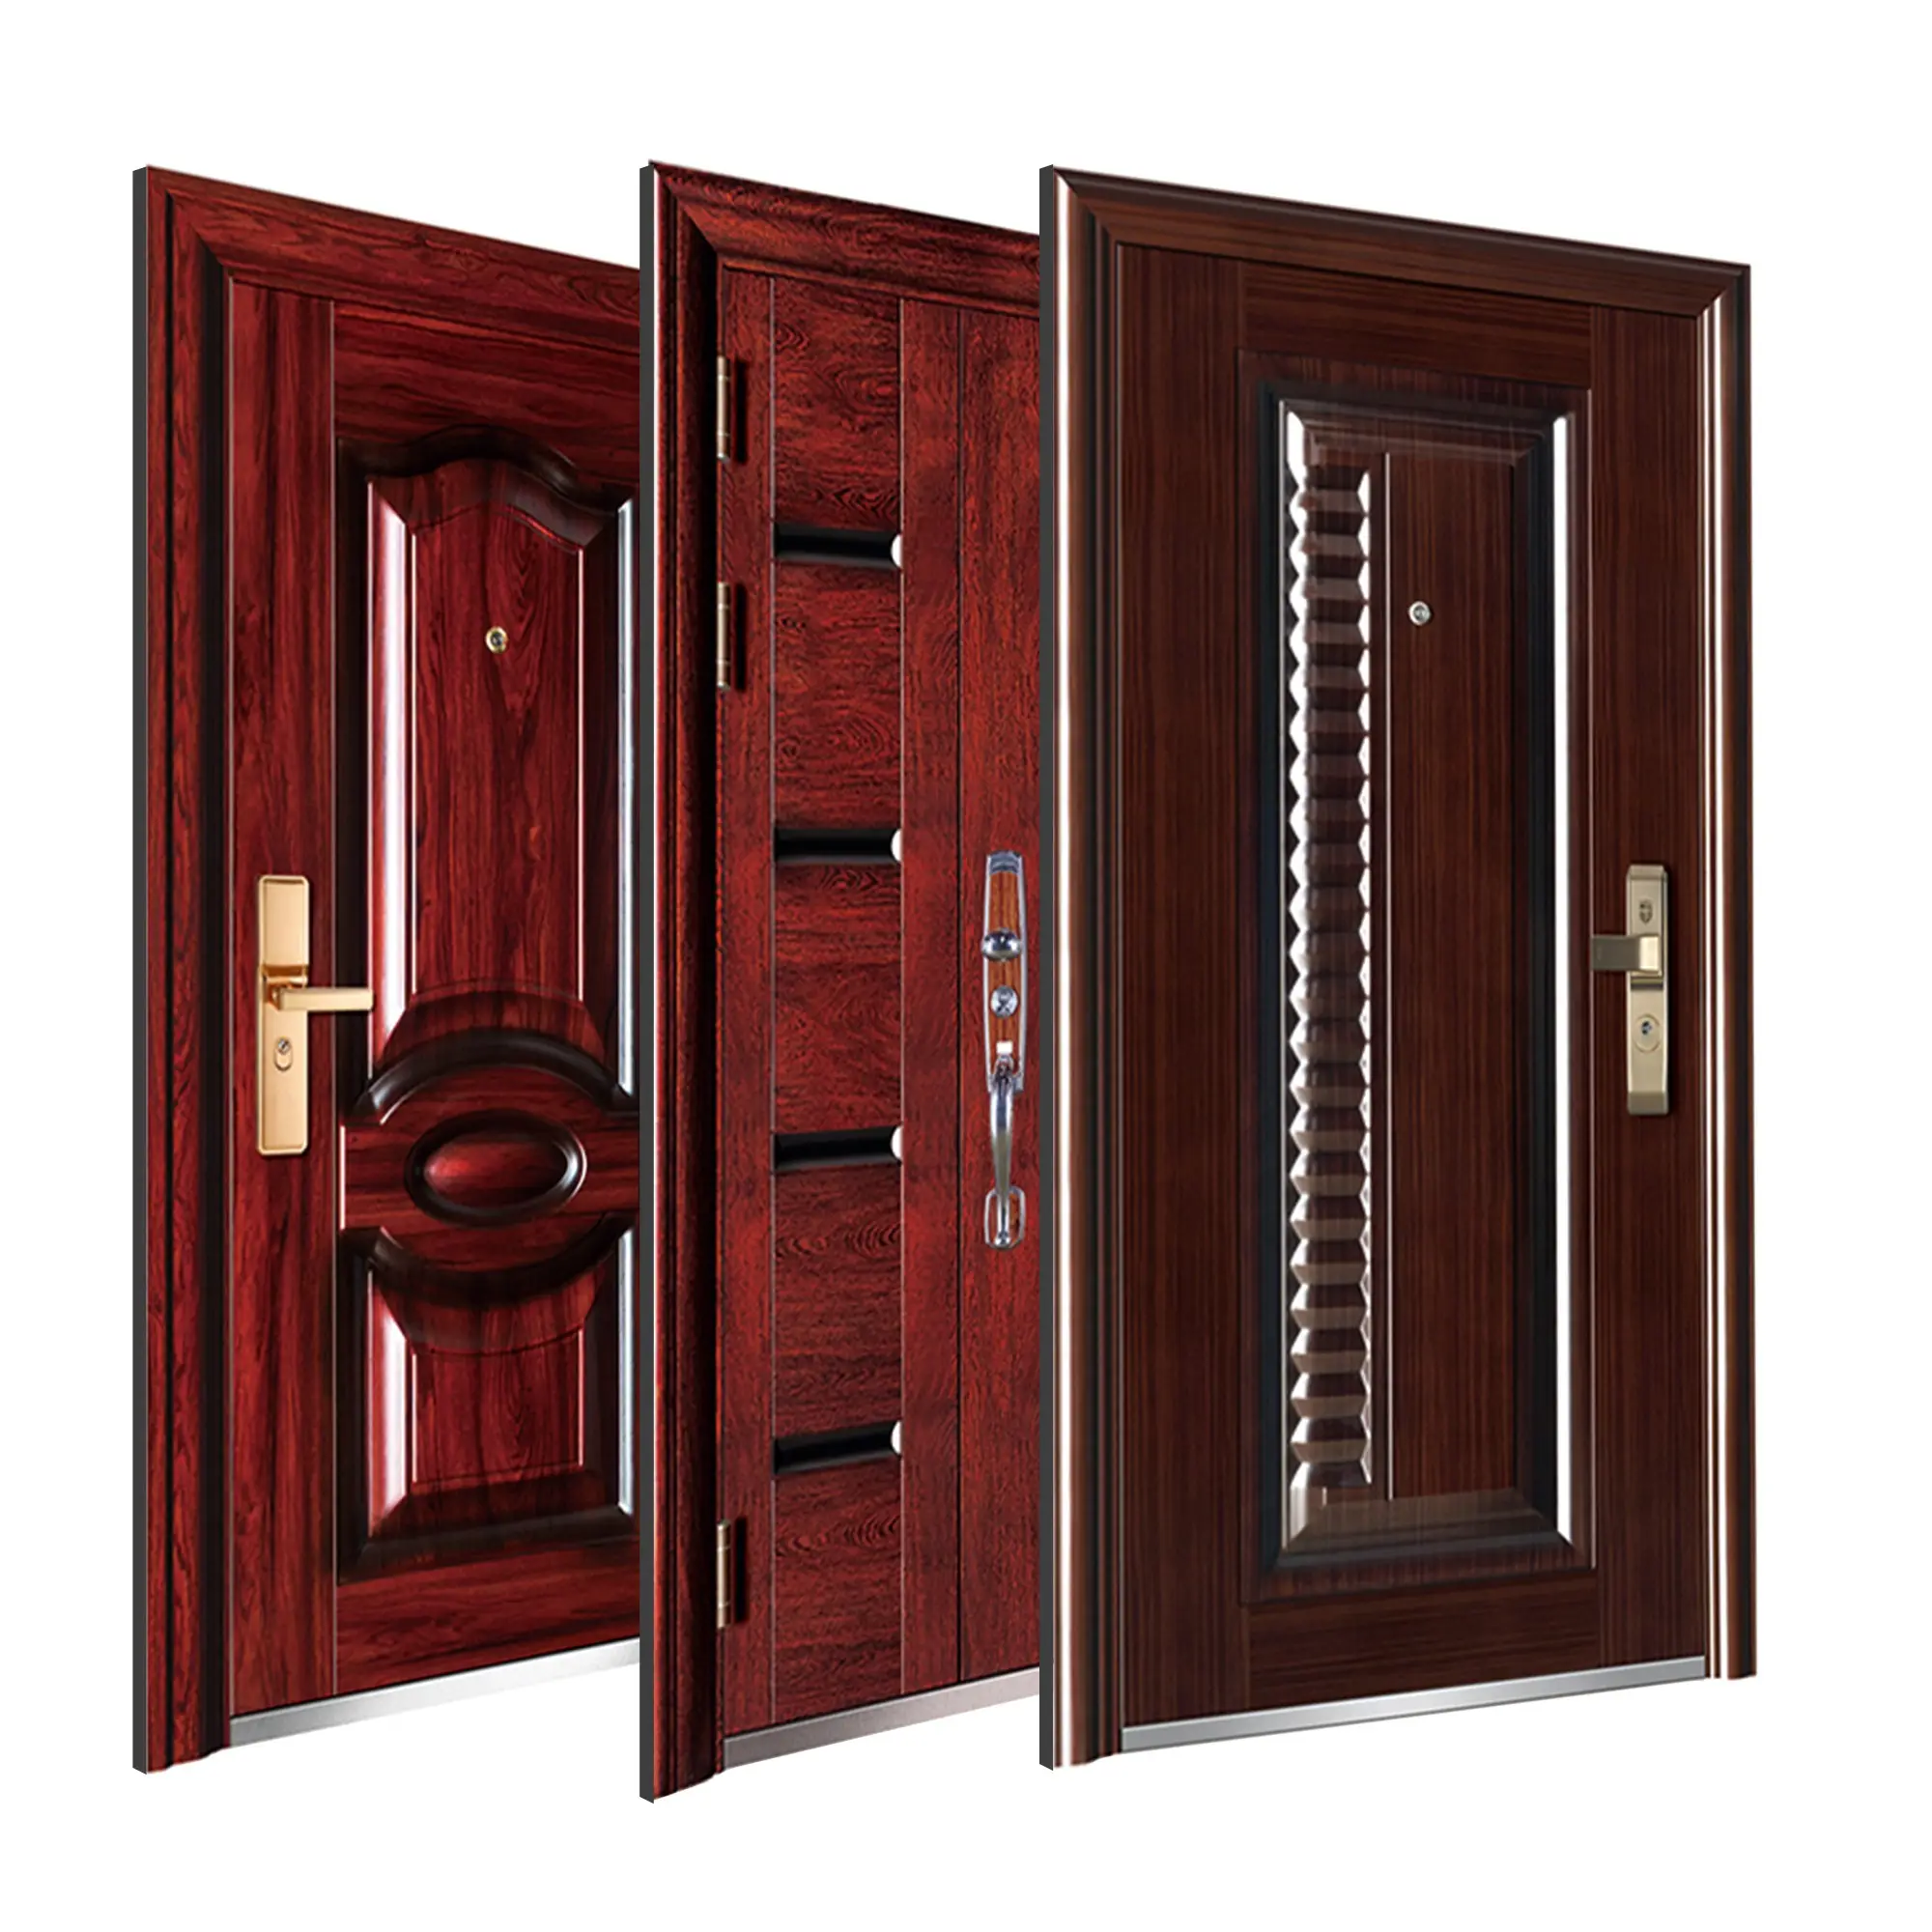 red wood door Security Exterior Cast Iron Anti-theft Exterior Door Retro Red Safety Door Design In Metal